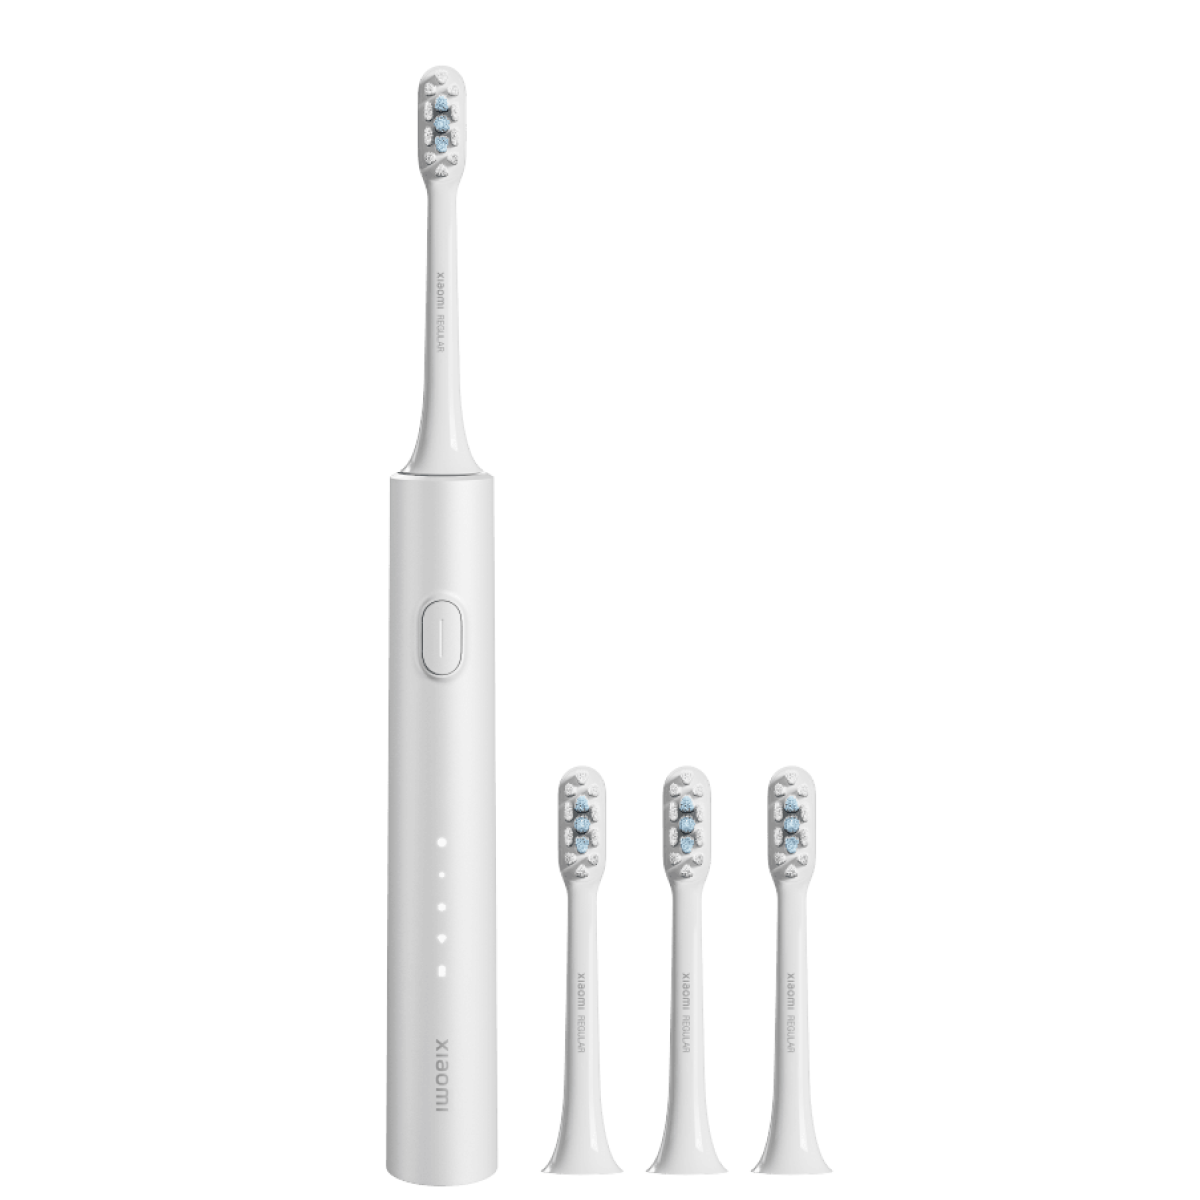 Электрическая зубная щетка Xiaomi Electric Toothbrush T302 серебристая электрическая зубная щетка dr bei sonic electric toothbrush gy1 red